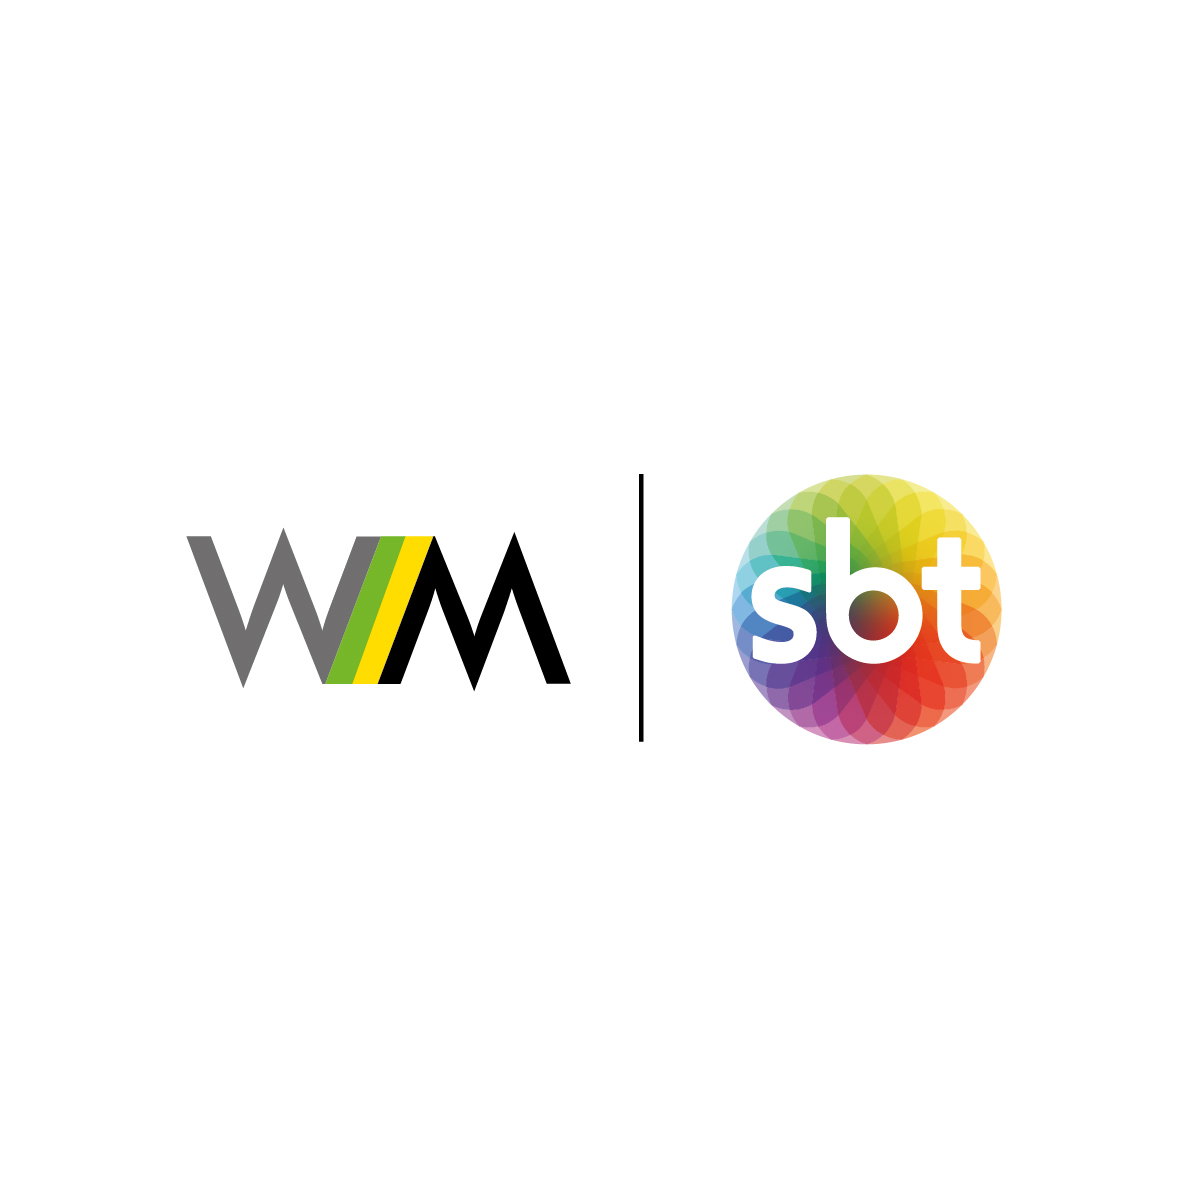 Imagem com fundo branco e logo da WMcCann ao lado do logo do SBT no centro.